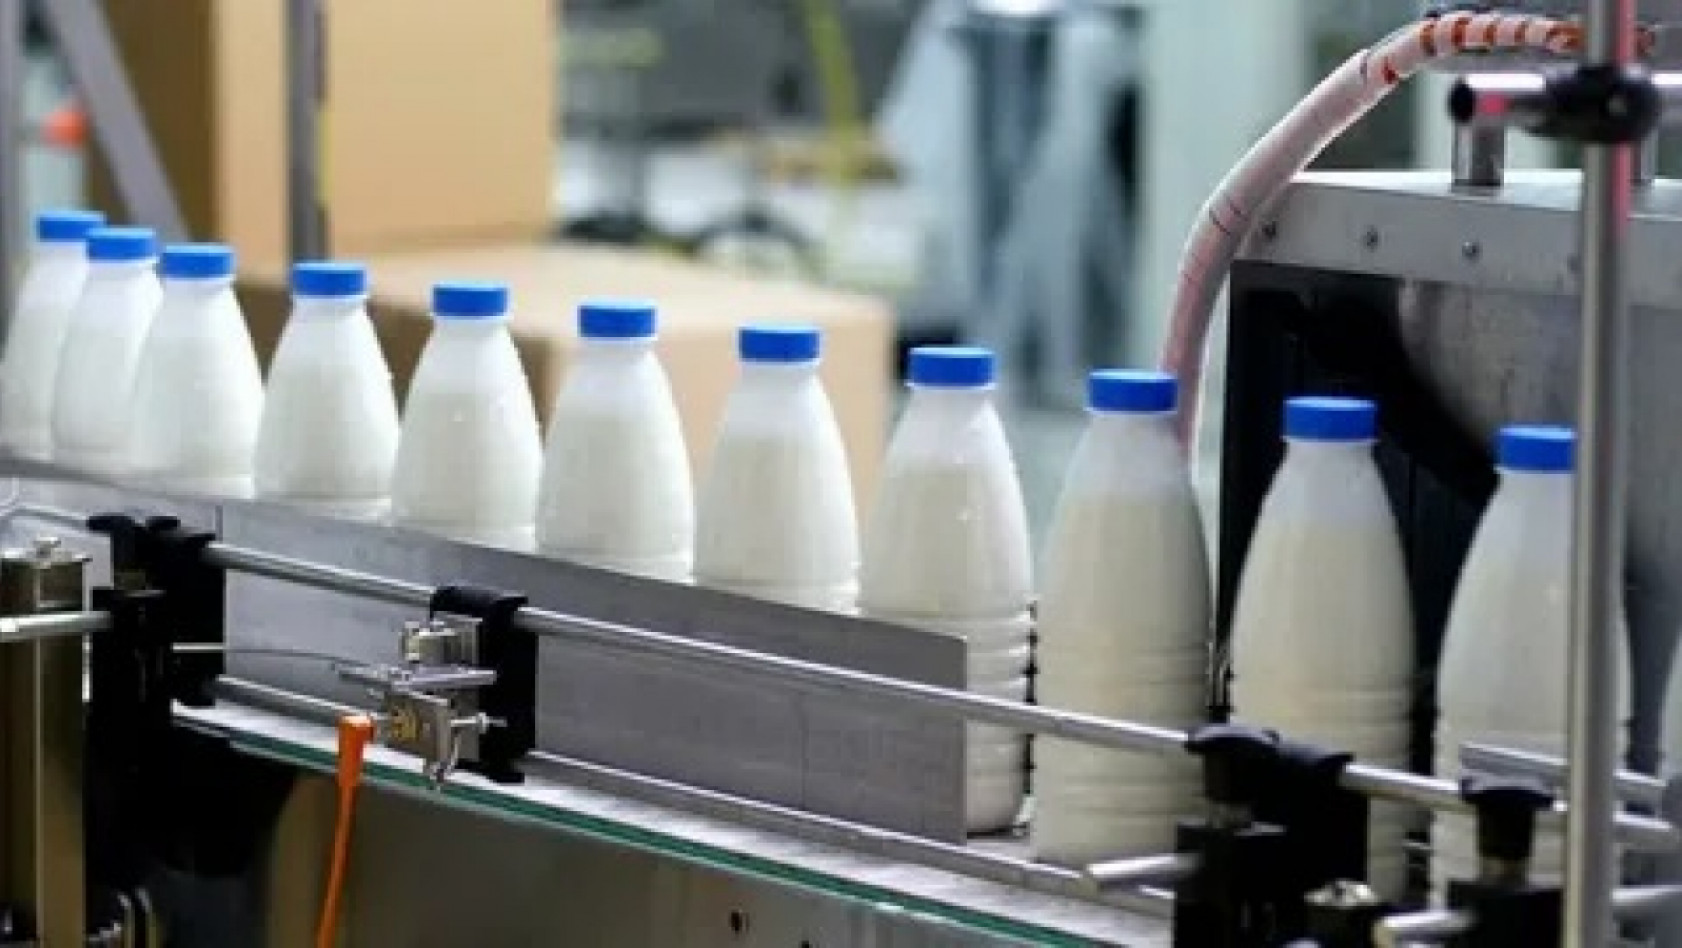 Ünlü süt markası iflas etti! Yüzlerce çalışan işsiz kaldı